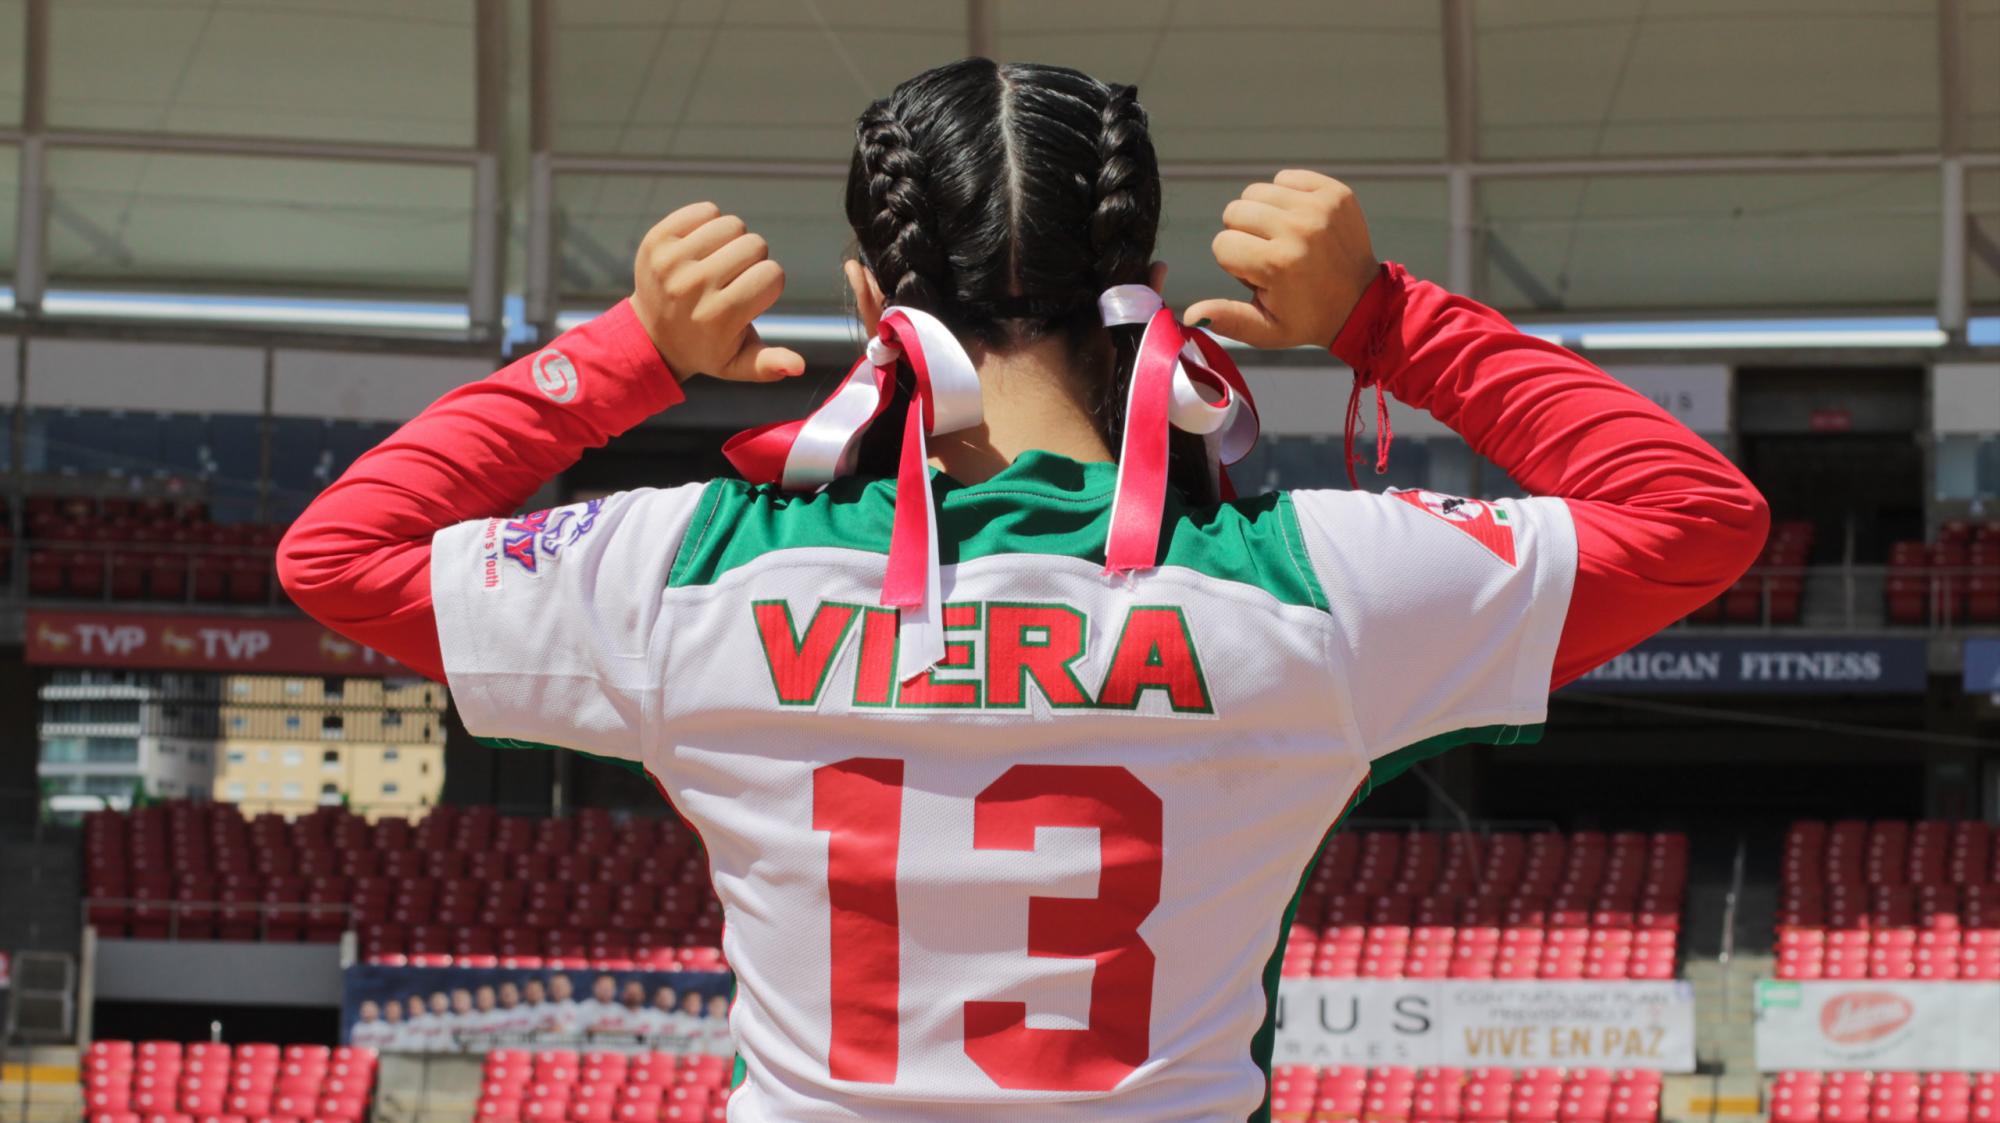 $!Venadita Danna Viera competirá en Mundial de Pony League Softbol